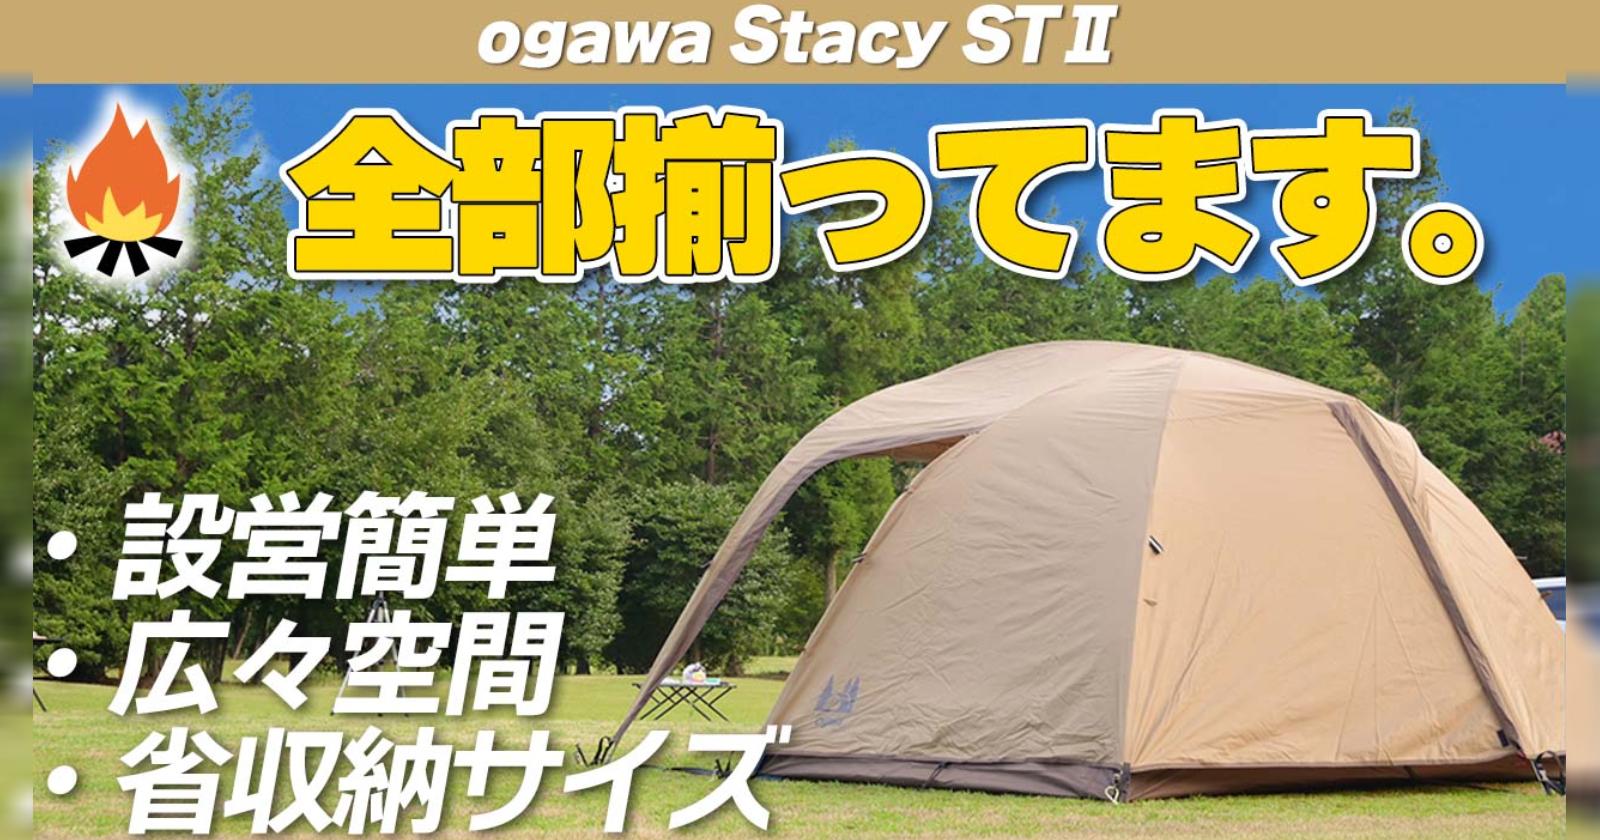 デイトナ ogawa(オガワ) テント ステイシー ST-2 サンドベージュ